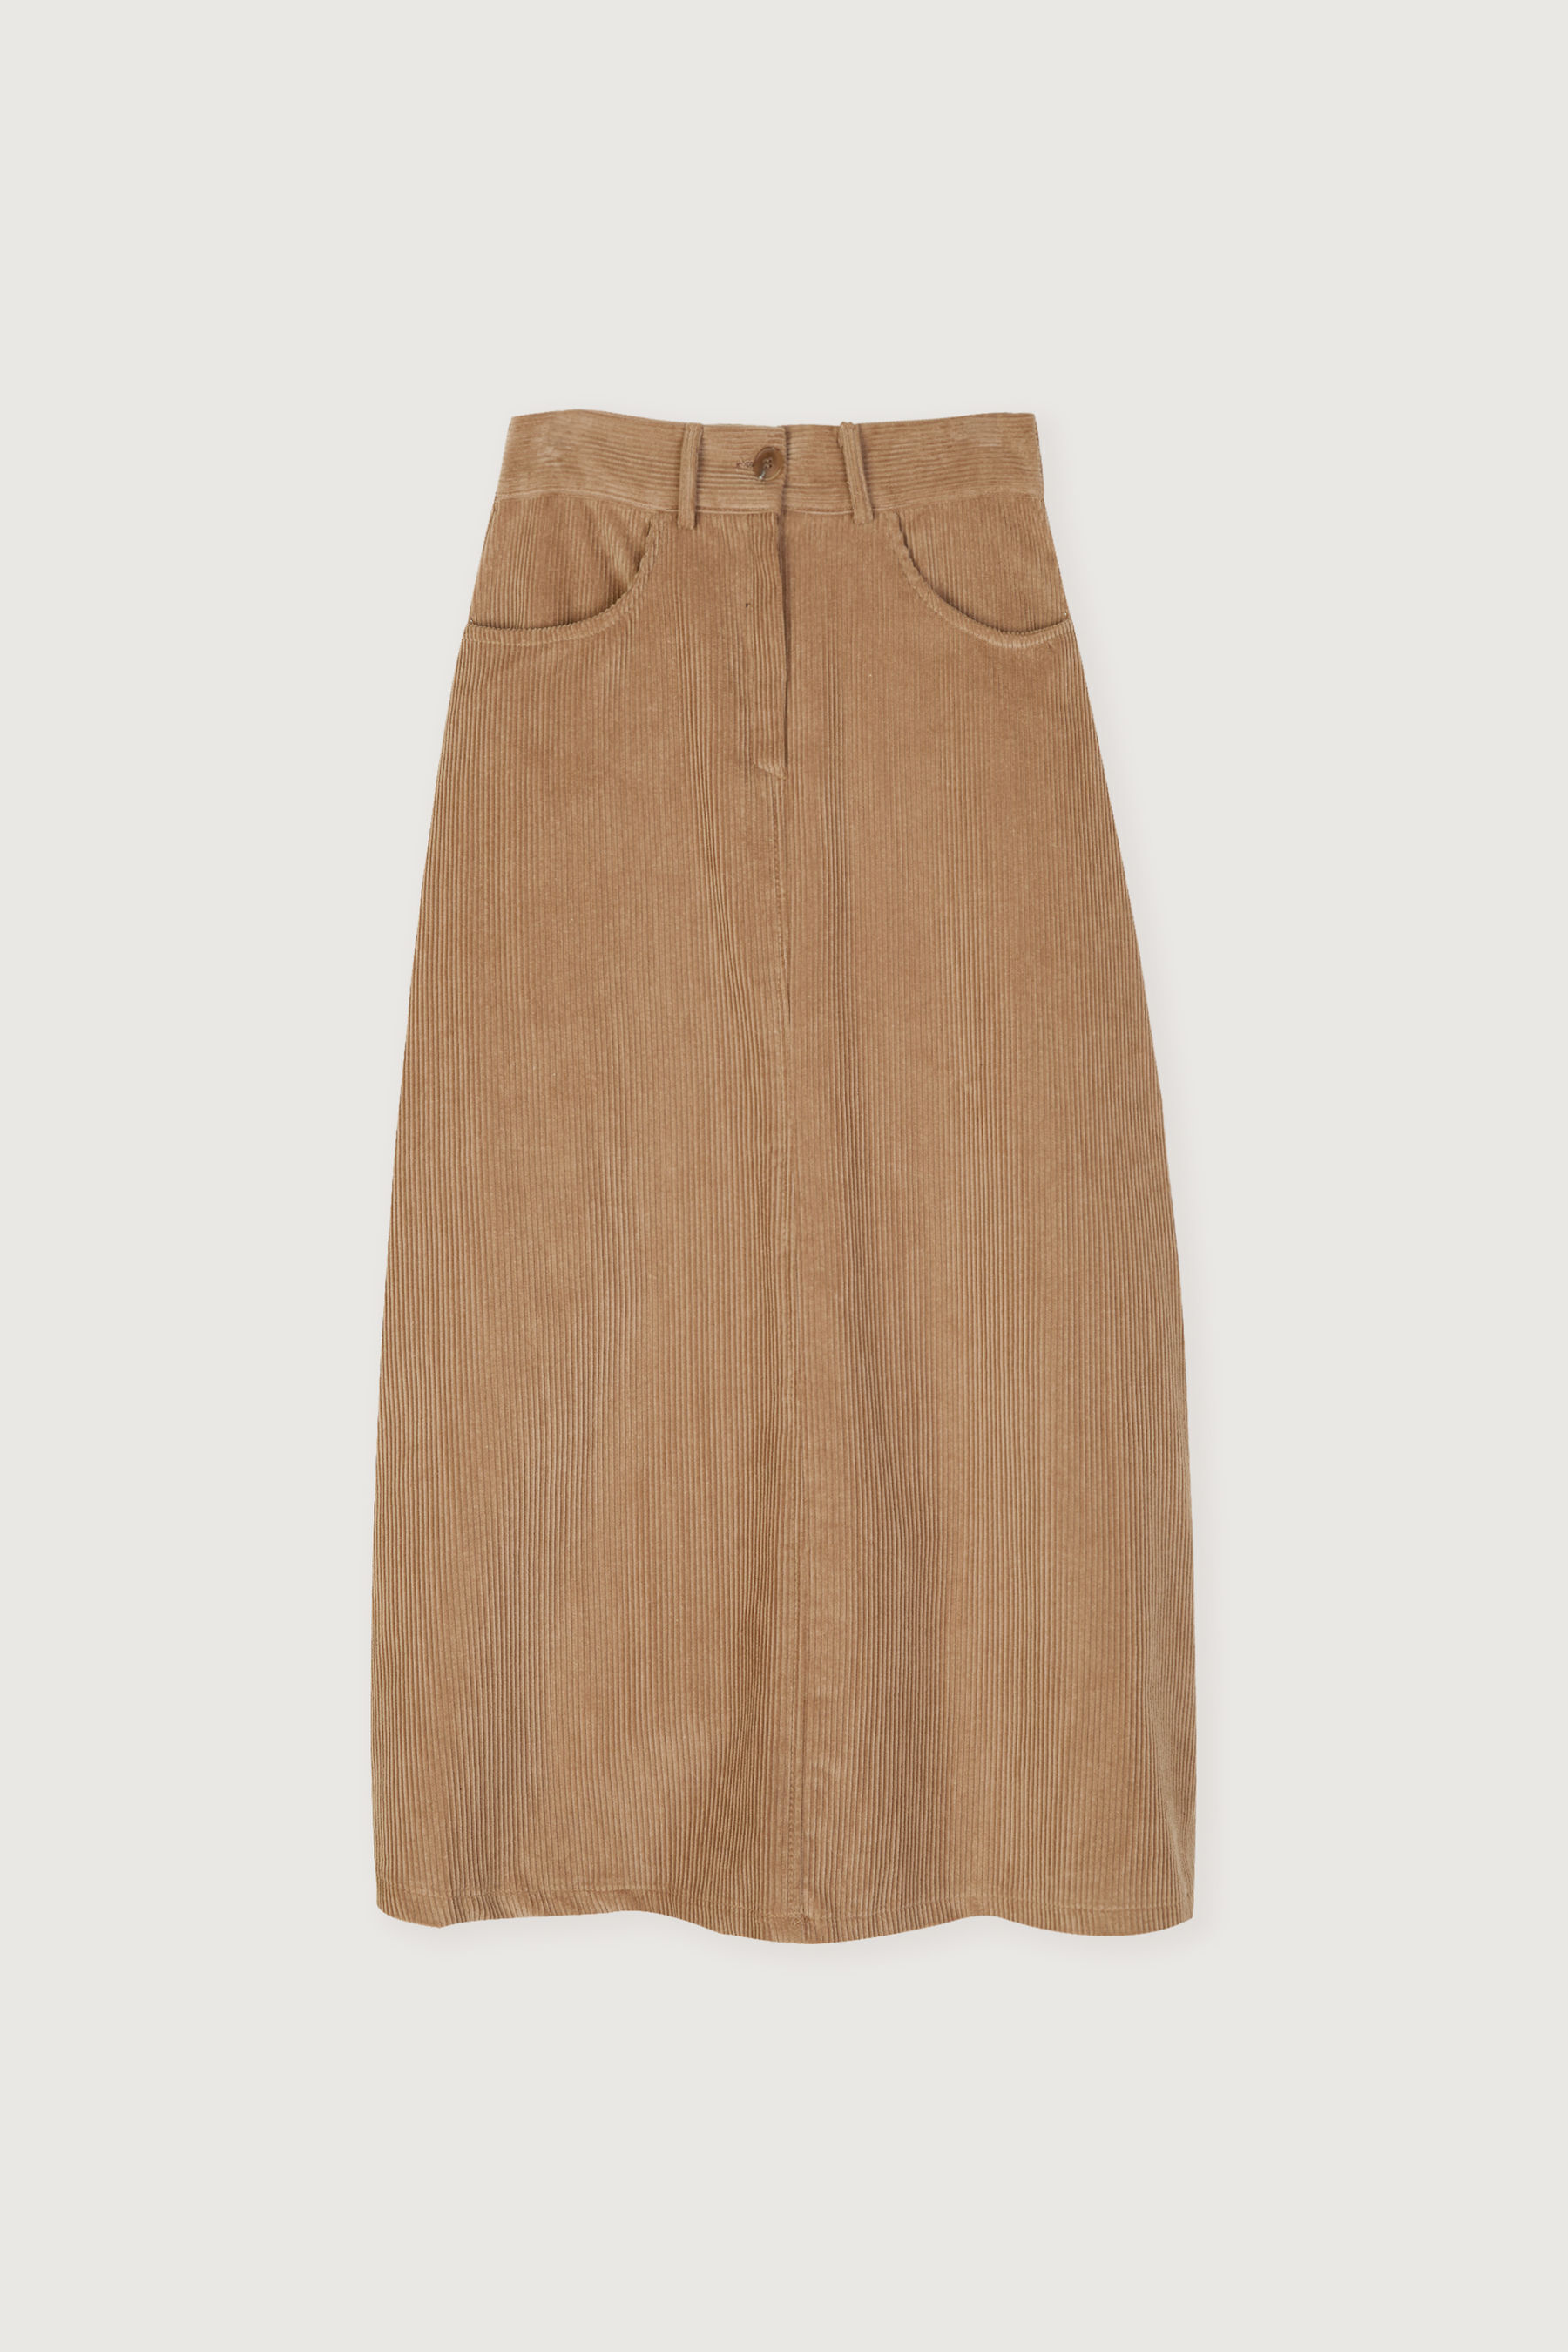 Corduroy Skirt 5057 | OAK + FORT